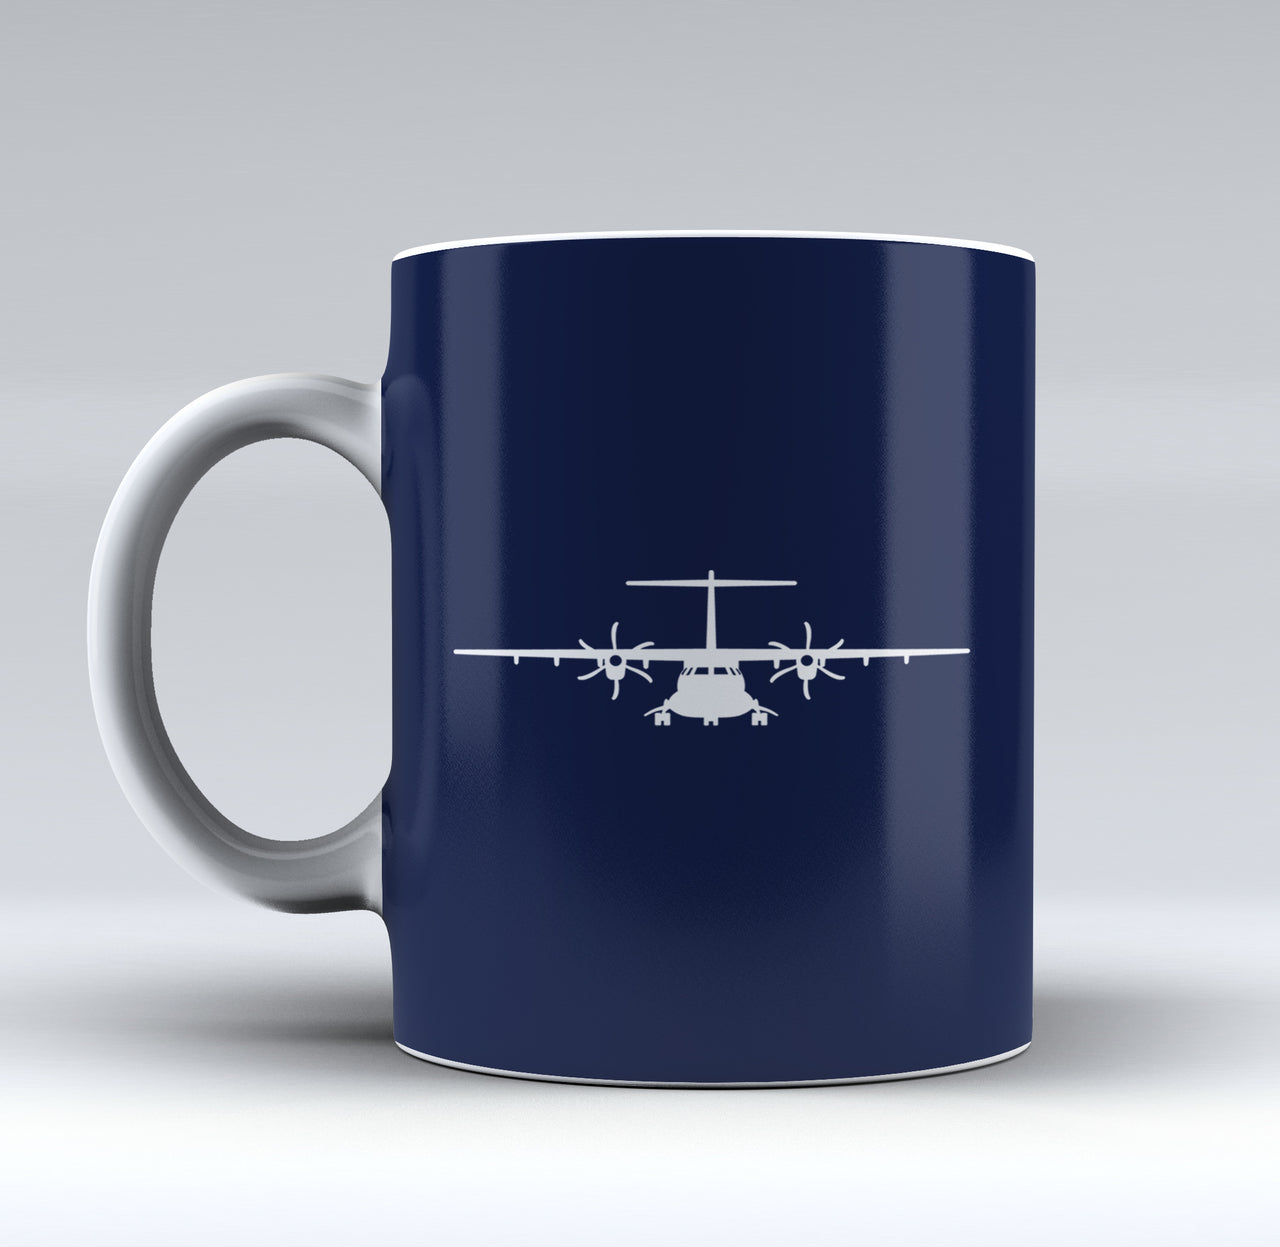 ATR-72 Silhouette Designed Mugs